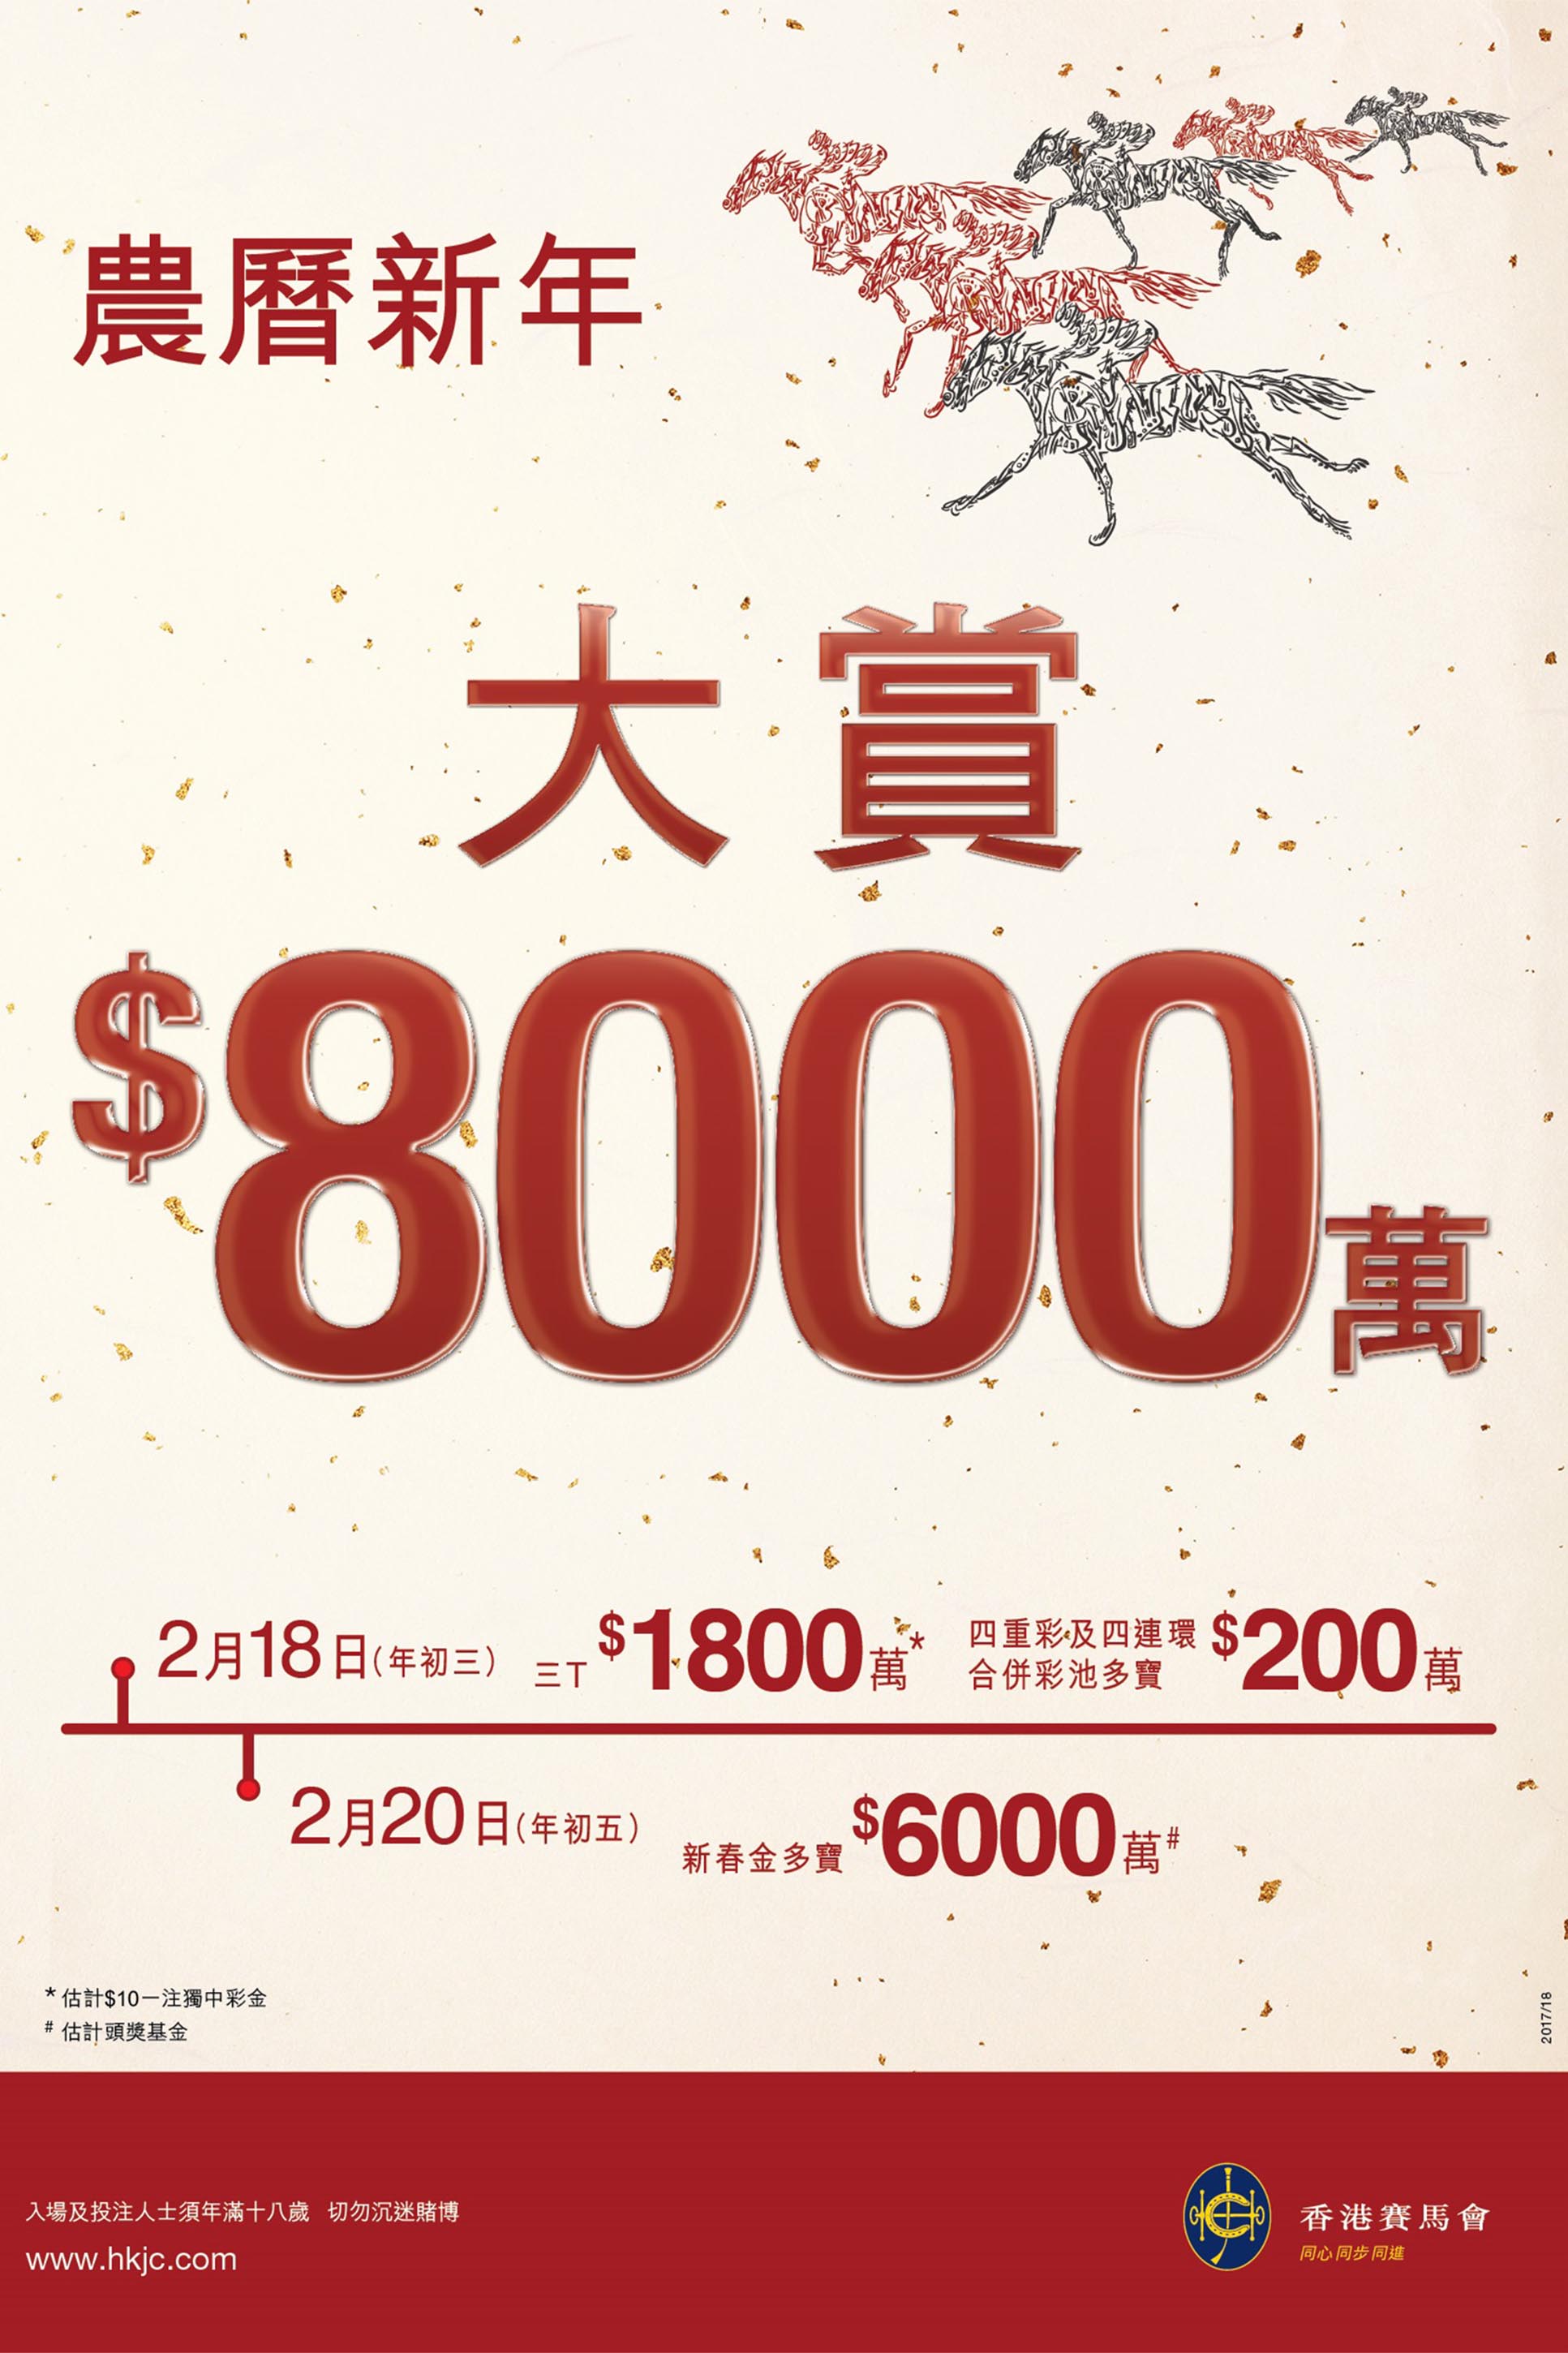 為慶祝狗年到臨，馬會將於新春期間發放合共八千萬元巨獎。